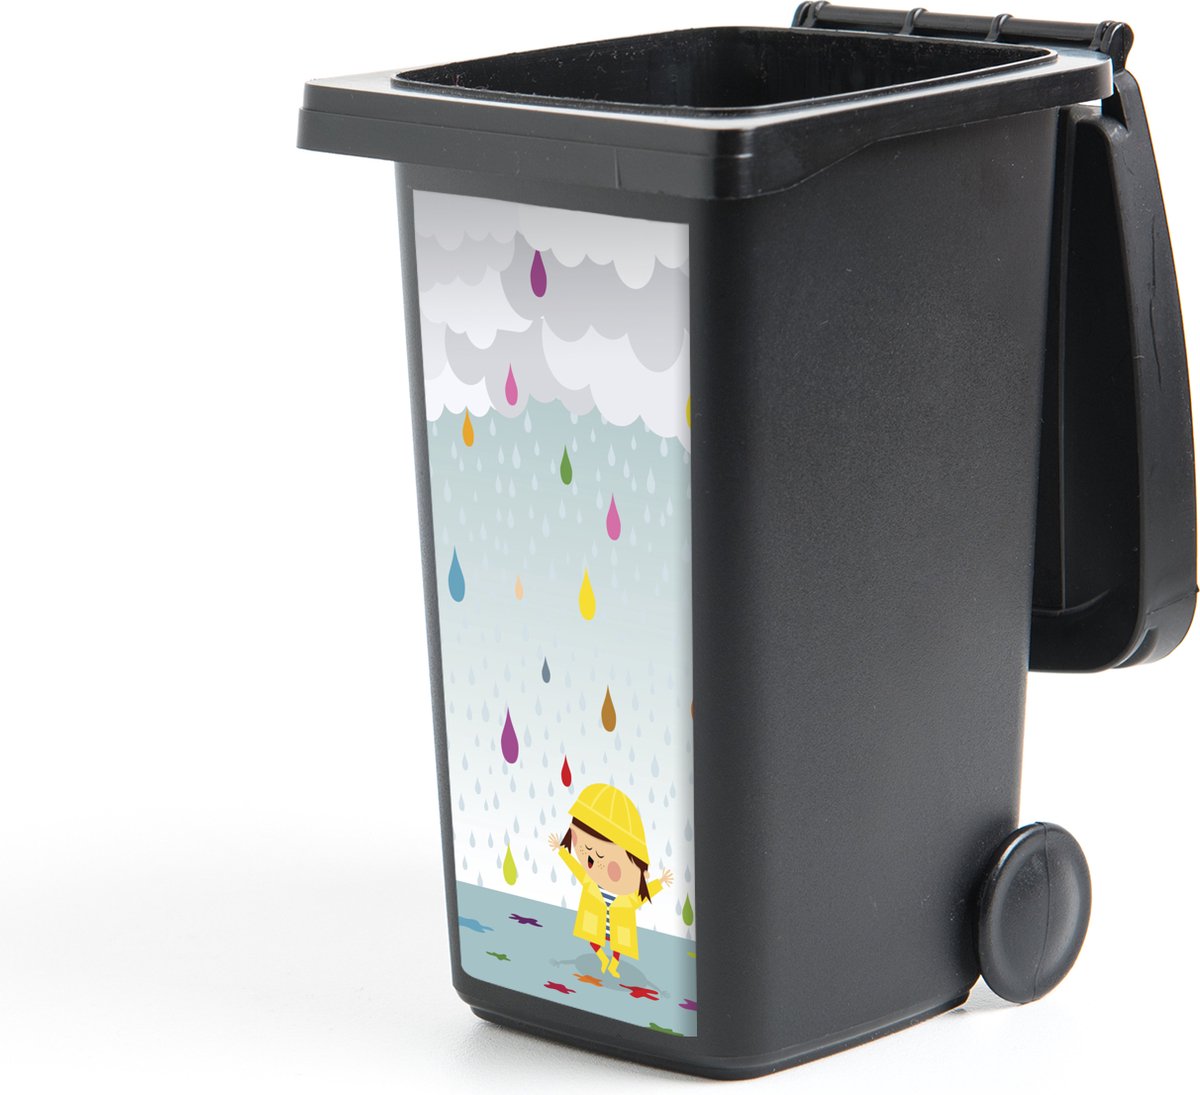 Afbeelding van product StickerSnake  Container sticker een kind dat omringt is met kleurrijke waterdruppels - 44x98 cm - Kliko sticker